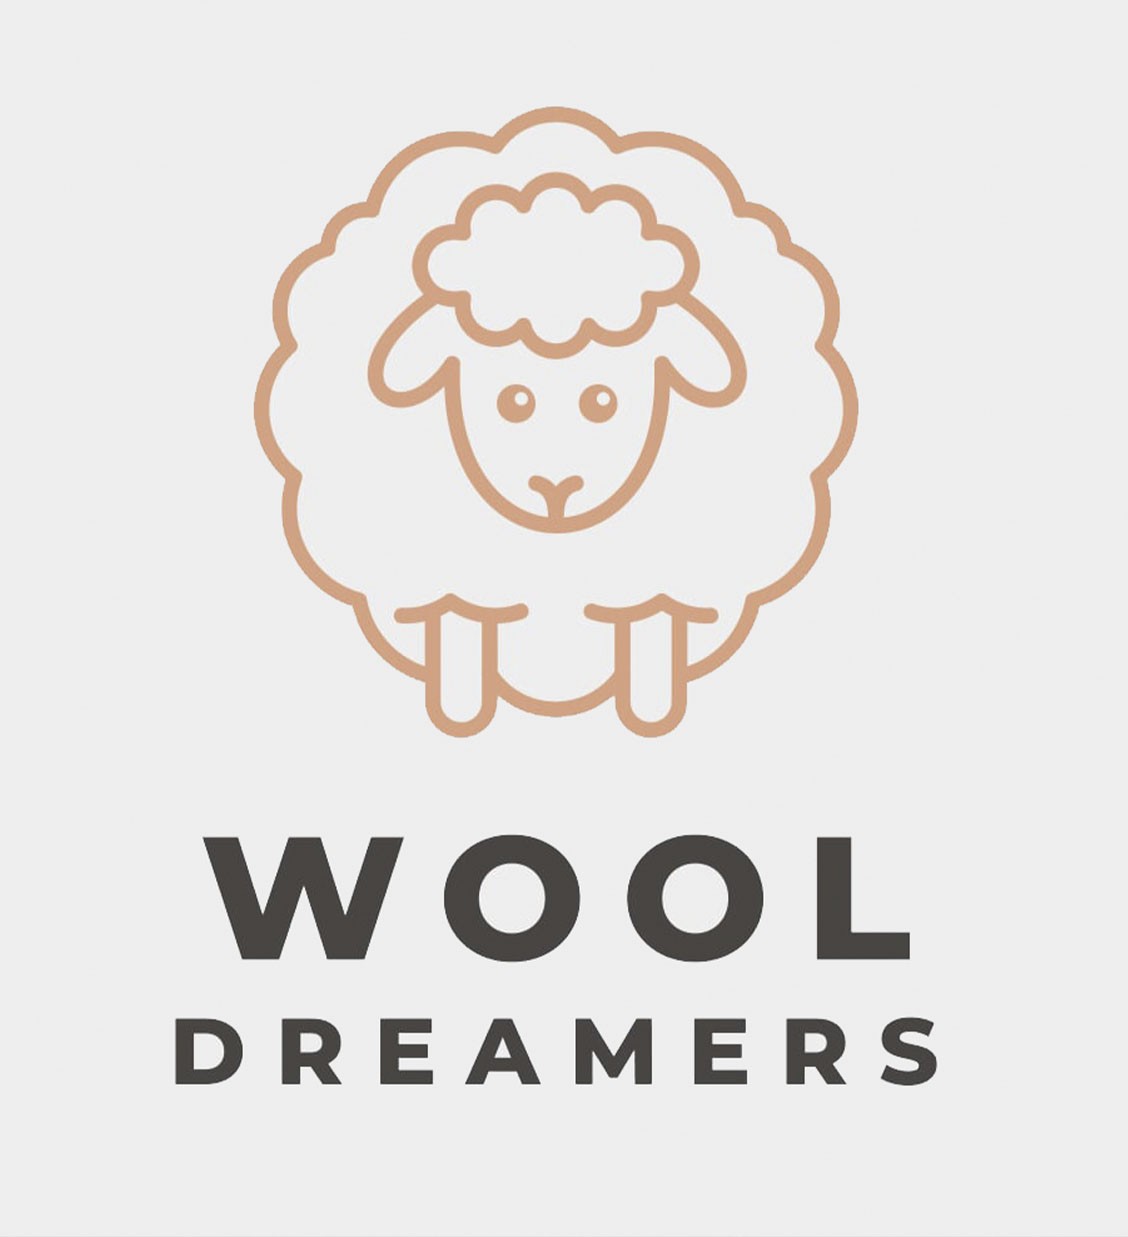 WoolDreamers